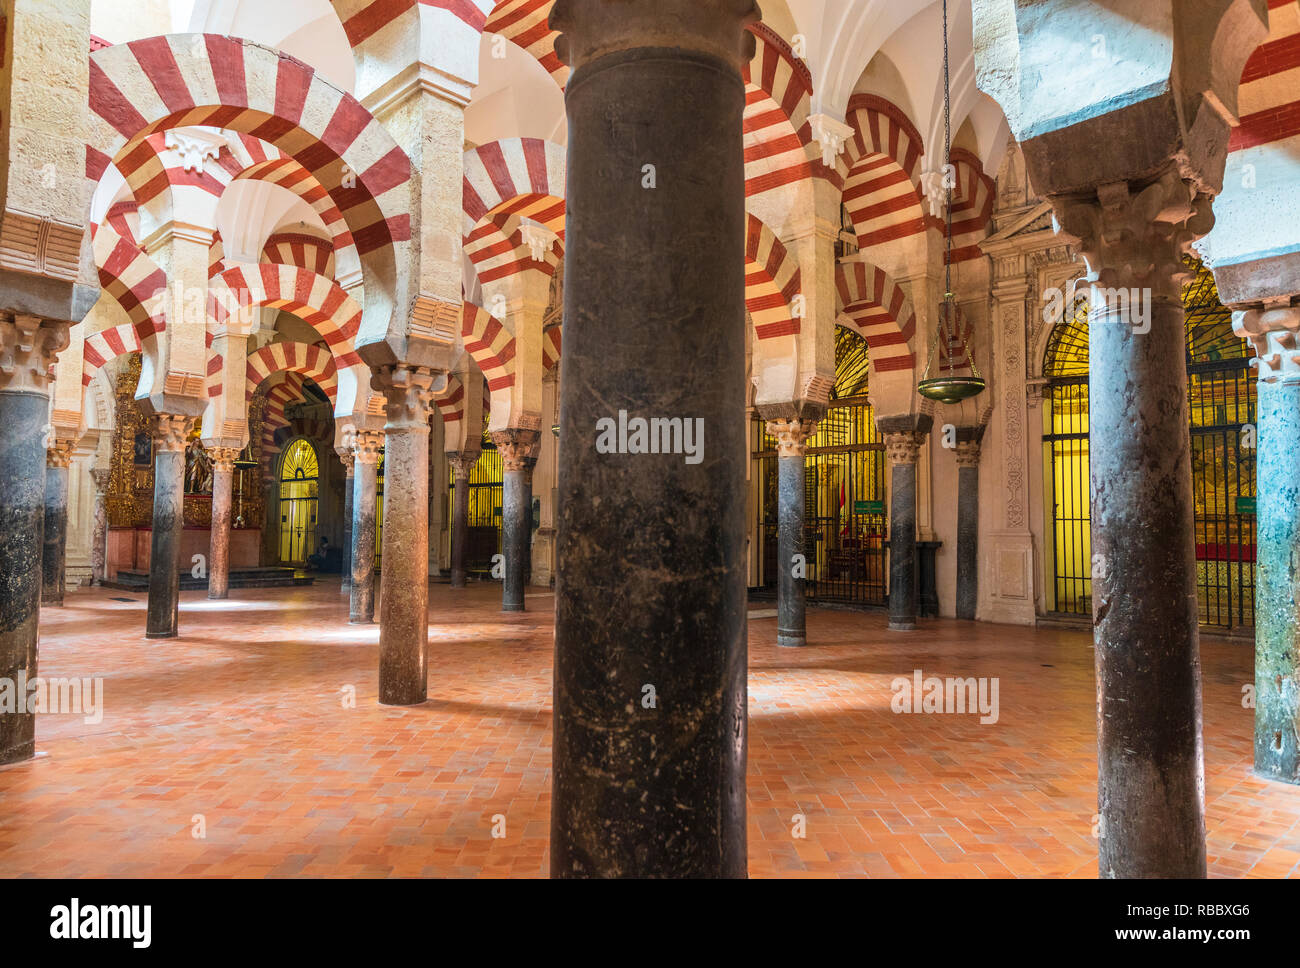 Dekorierten Torbögen und Säulen im maurischen Stil, Mezquita-Catedral (Große Moschee von Cordoba), Cordoba, Andalusien, Spanien Stockfoto